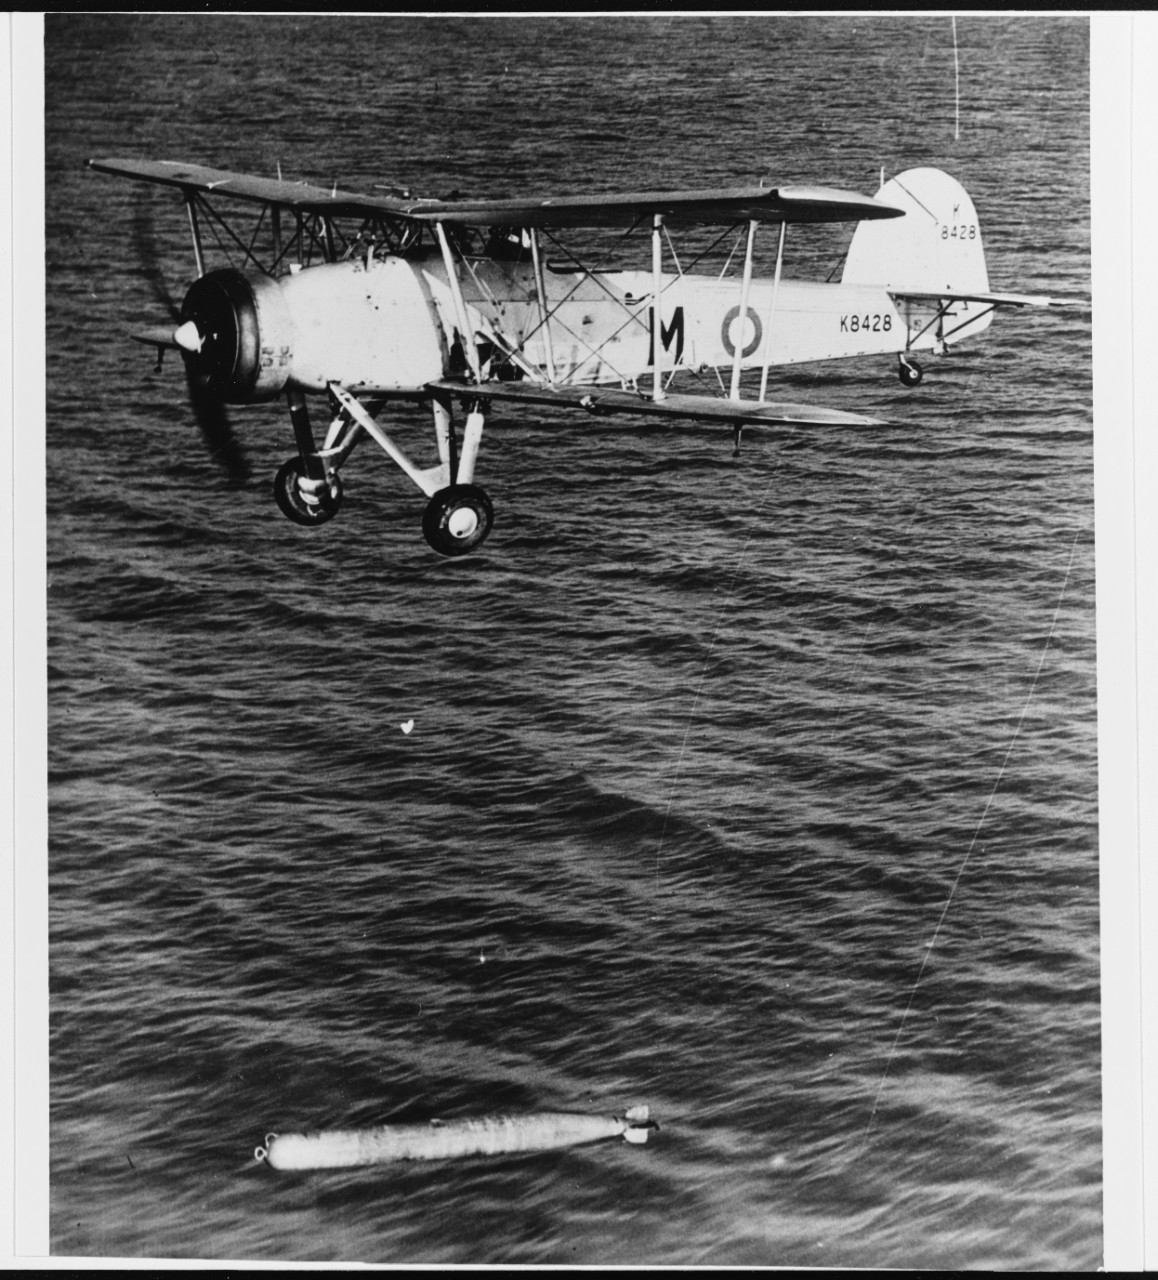 Fairey Swordfish British Navy Torpedo Bomber